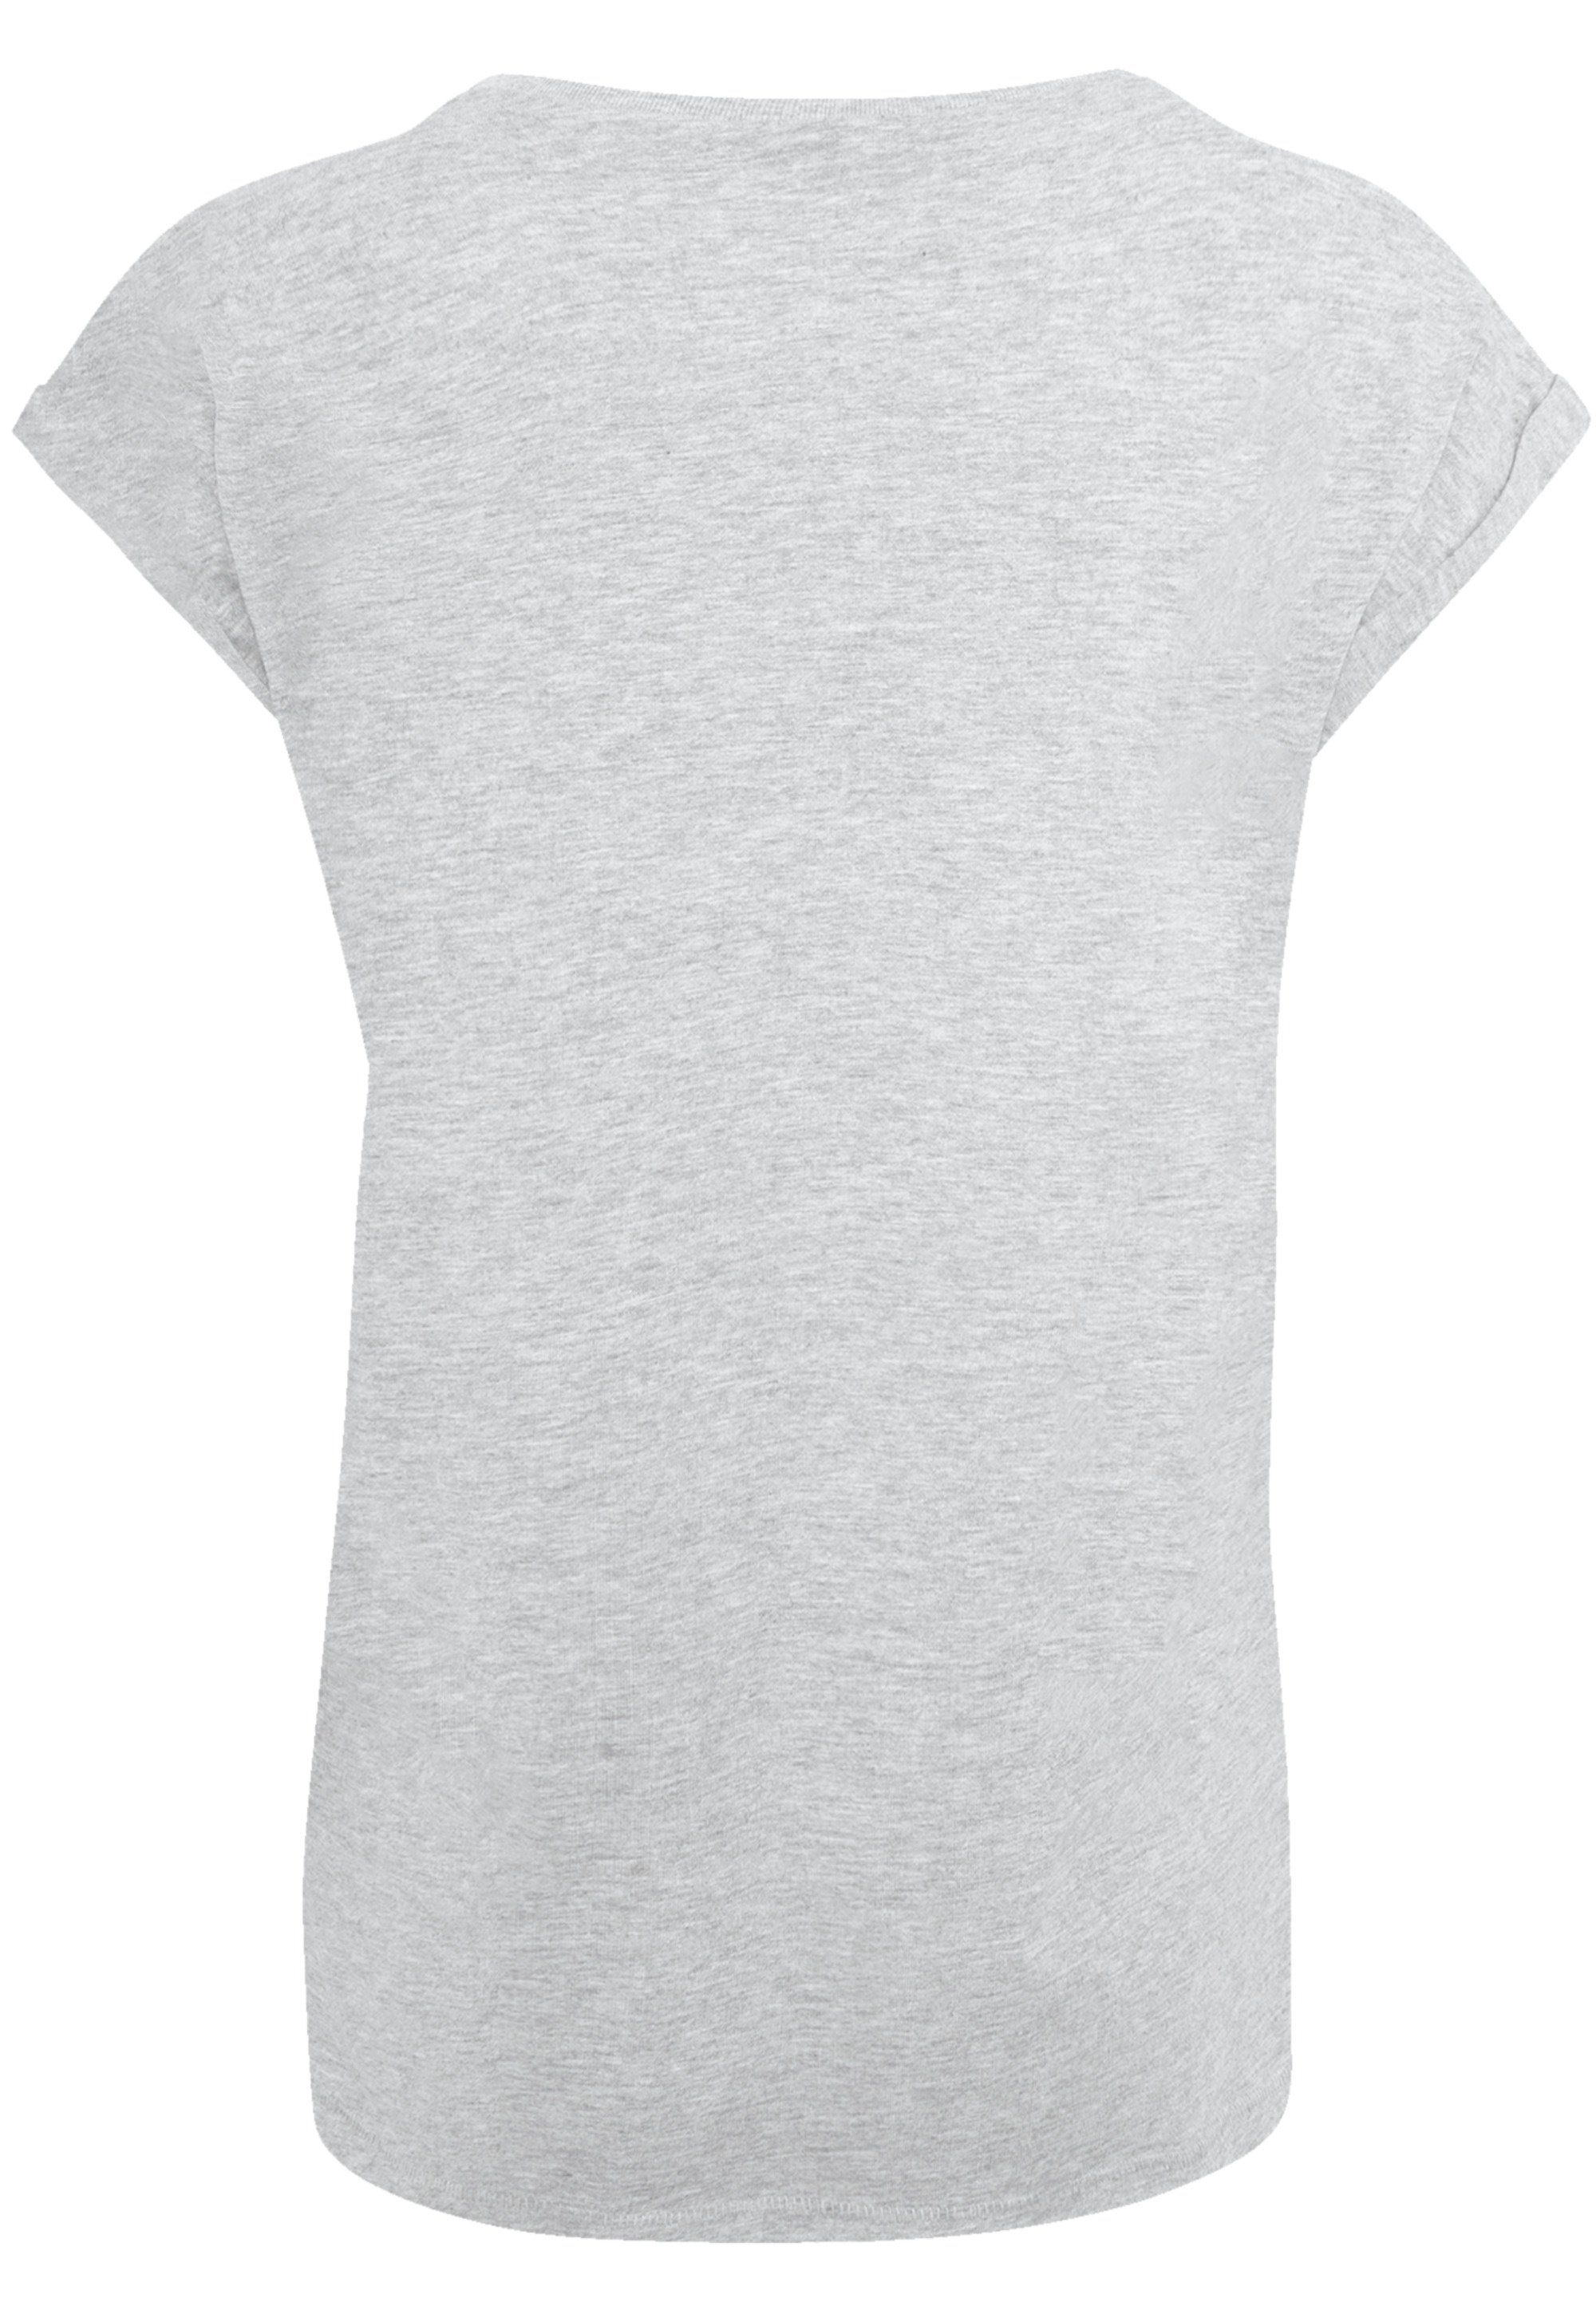 Qualität T-Shirt Premium F4NT4STIC Wars heather grey Turmoil Star